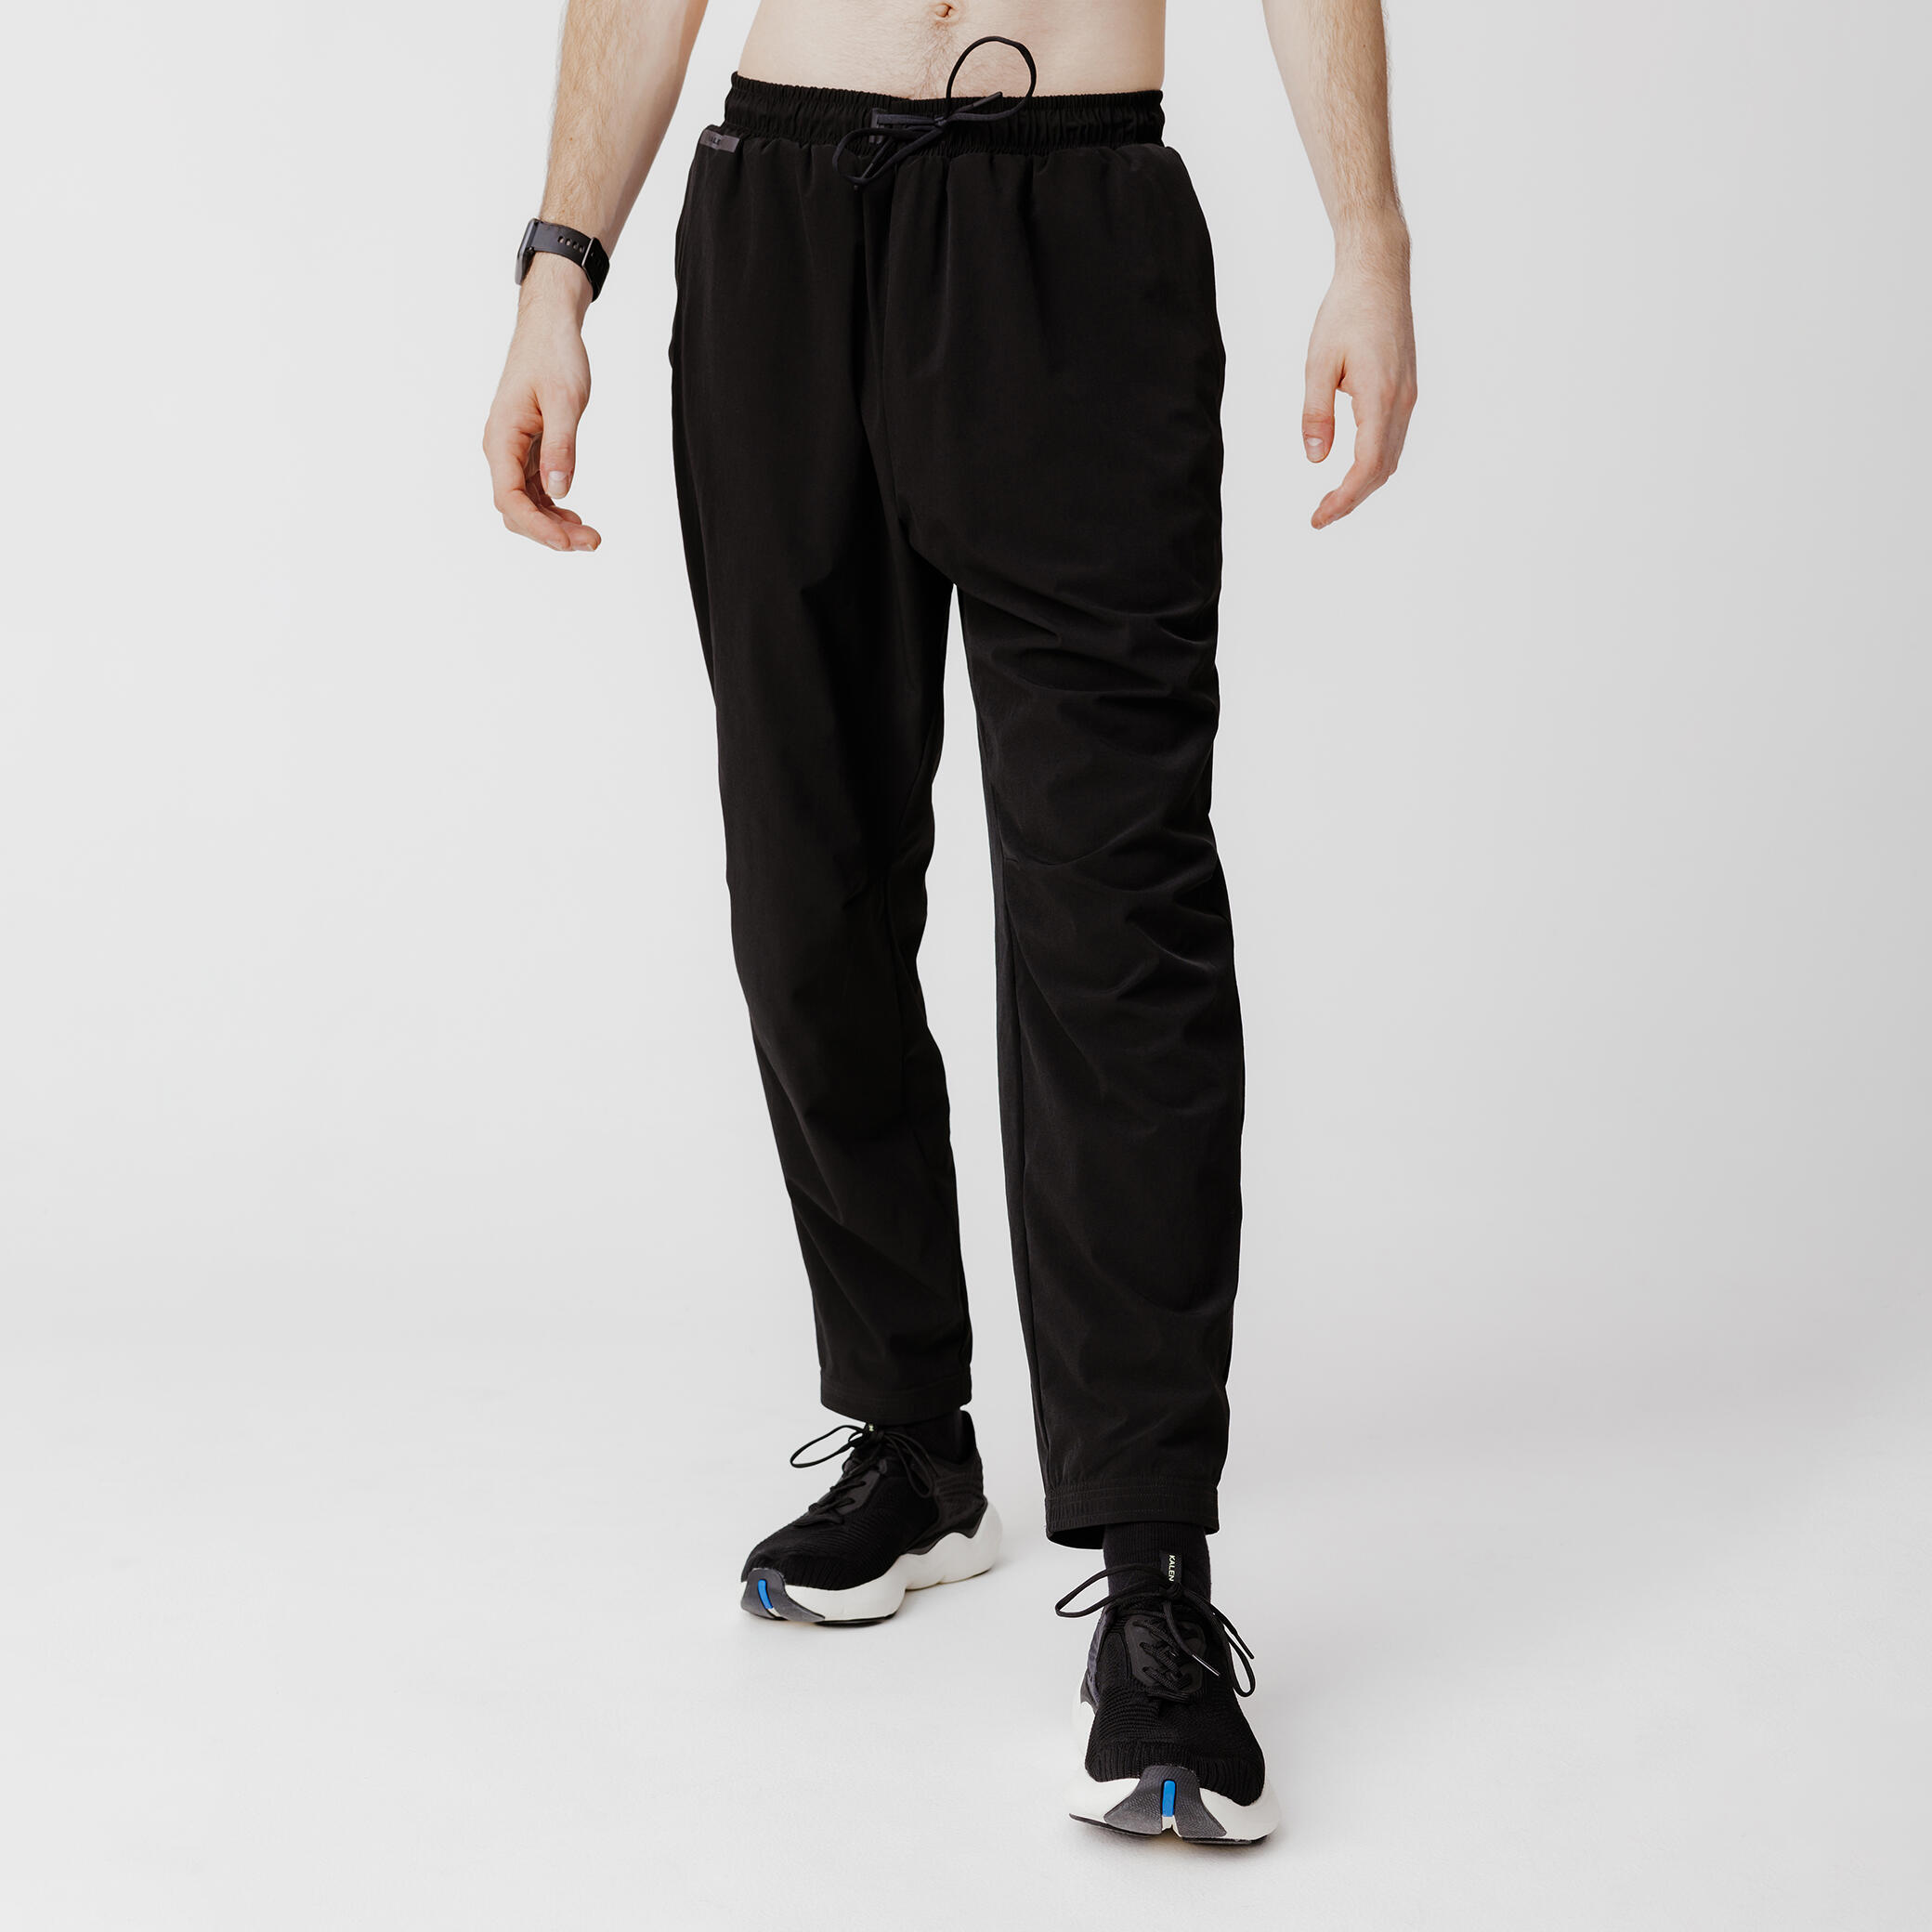 pantalon running respirant homme - dry 500 noir - kalenji